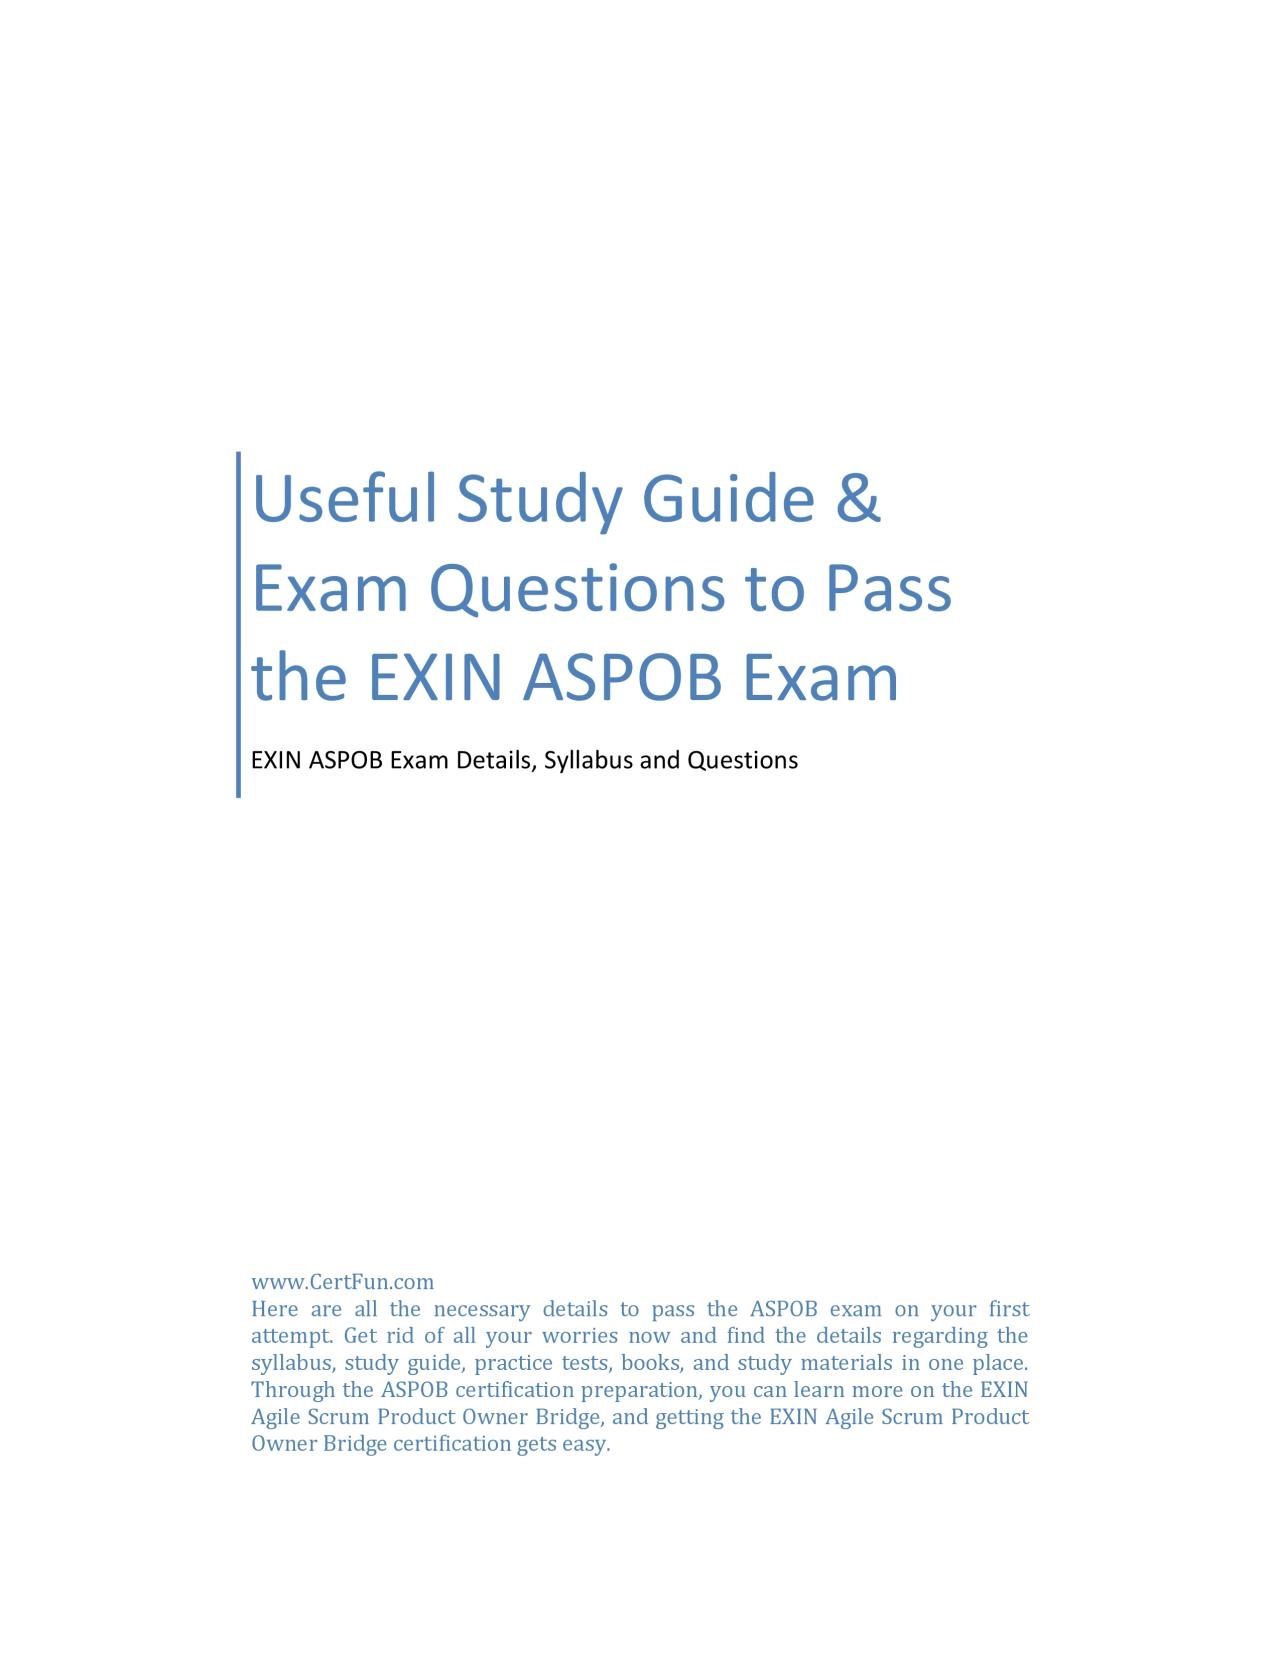 Useful Study Guide & Exam Questions to Pass the EXIN ASPOB Exam